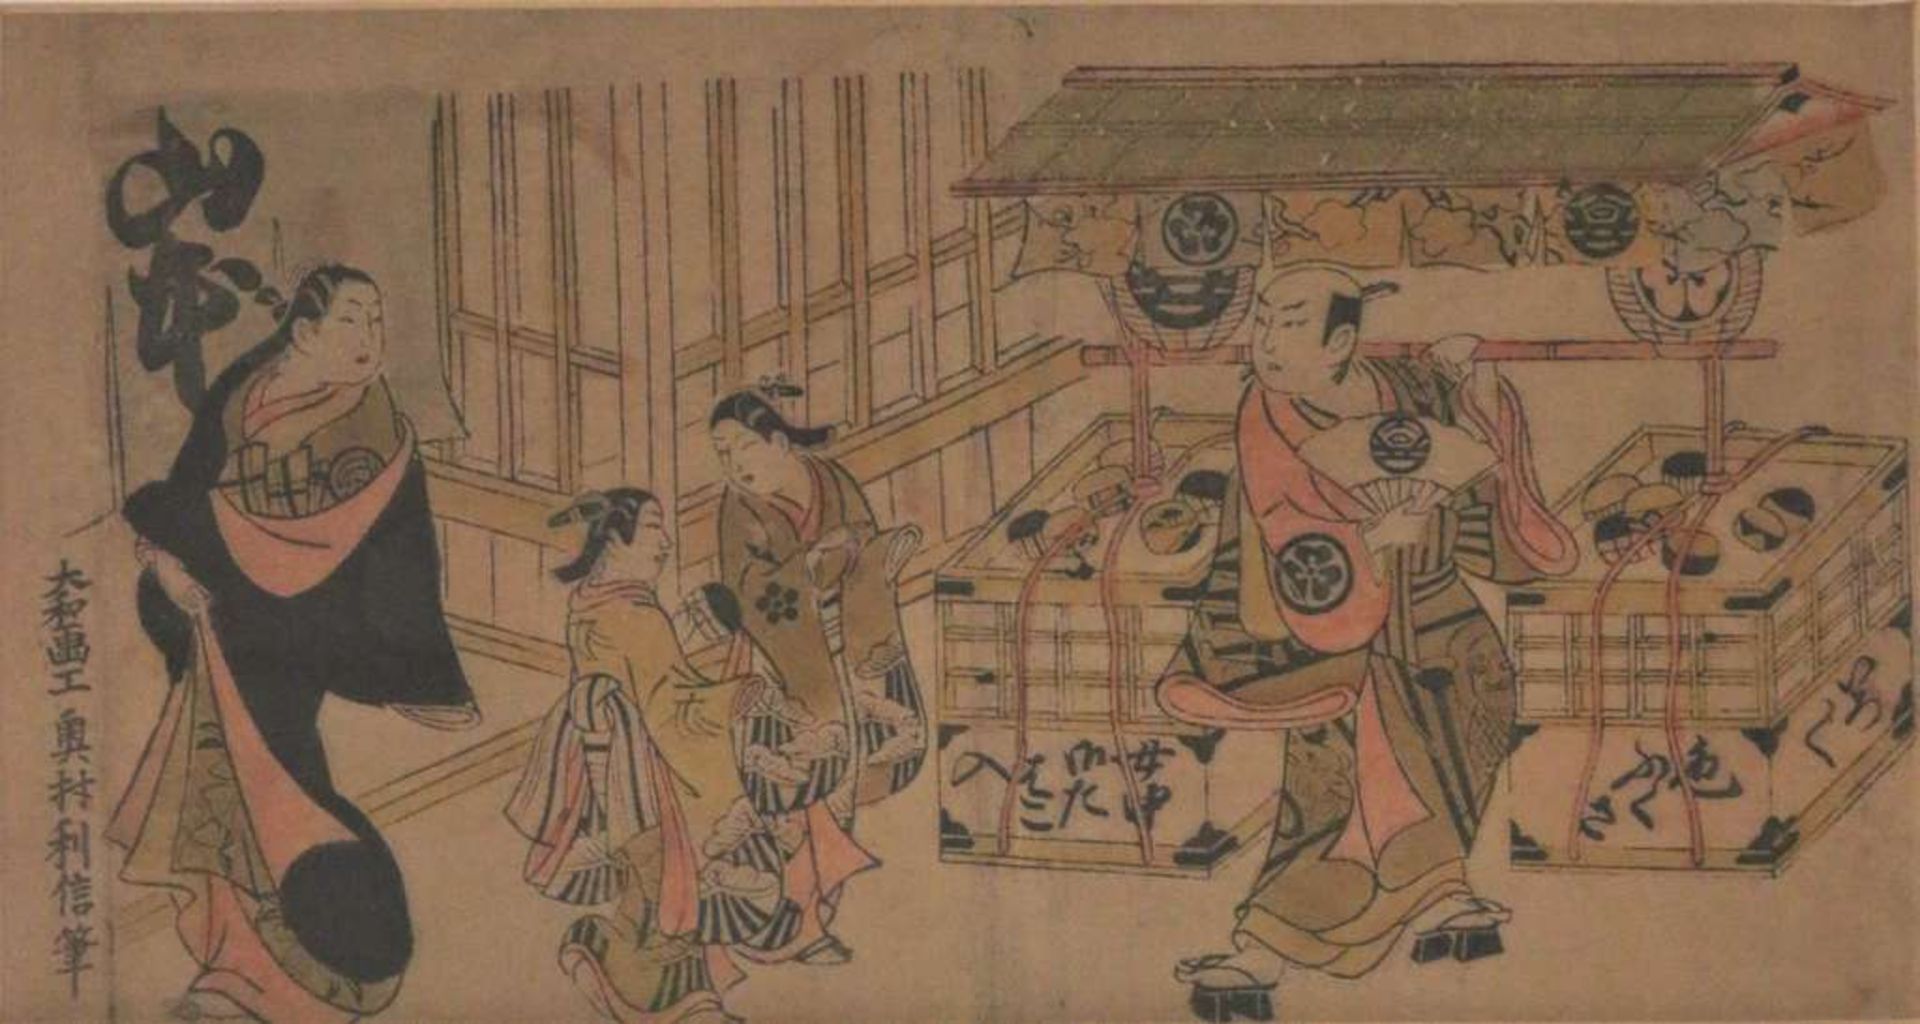 Farbholzschnitt, Japan, wohl 19. Jh., Dame mit Dienerinnen bei einem Händler. Maße: 15 x 28,5 cm.